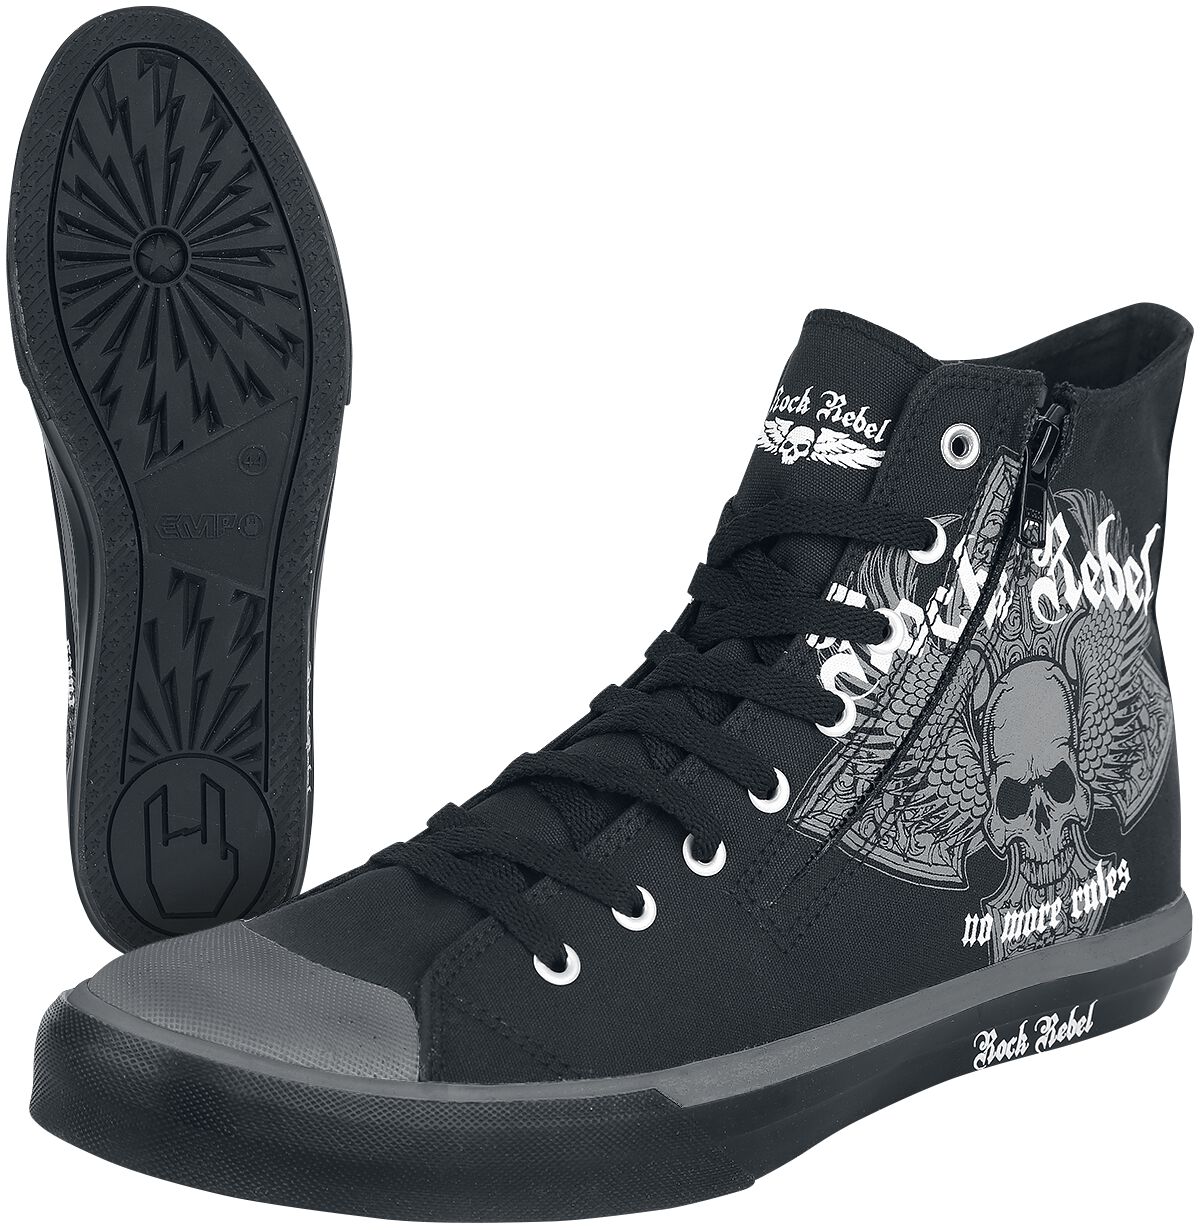 Rock Rebel by EMP - Rock Sneaker high - Walk The Line - EU37 bis EU47 - Größe EU38 - schwarz